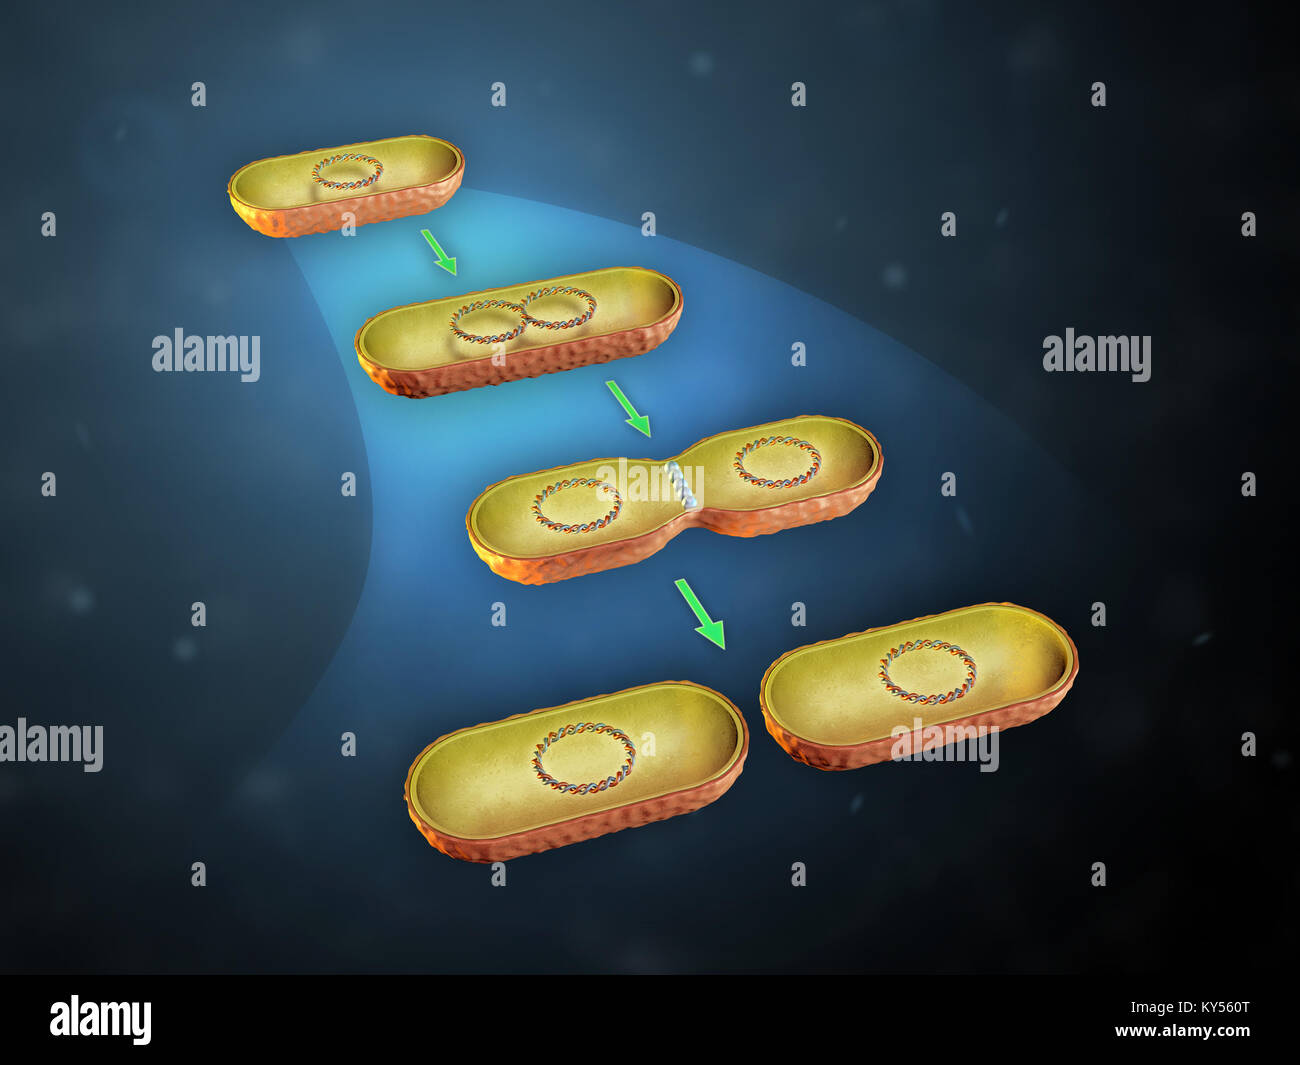 La fission binaire dans les bactéries. 3D illustration. Banque D'Images